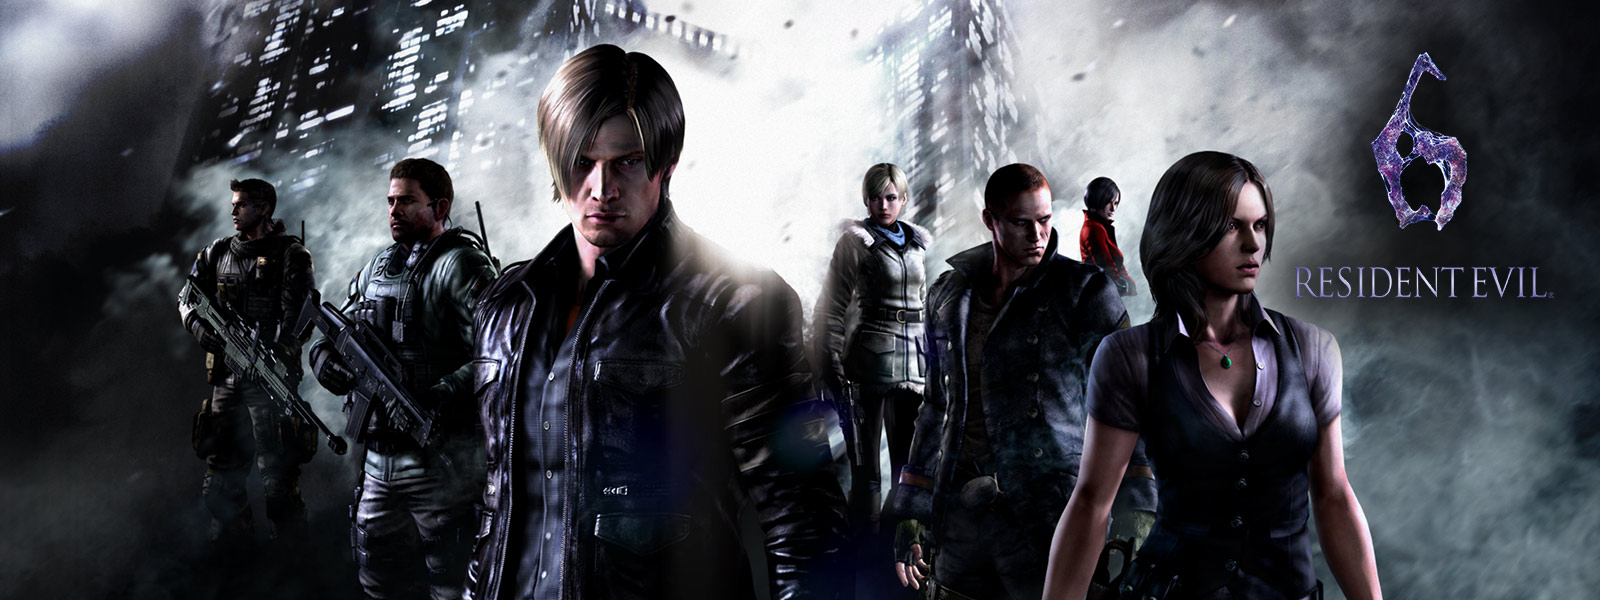 Resident Evil 6, resident evil karakterlerinin hepsi uğursuz gökdelenlerin önünde duruyor